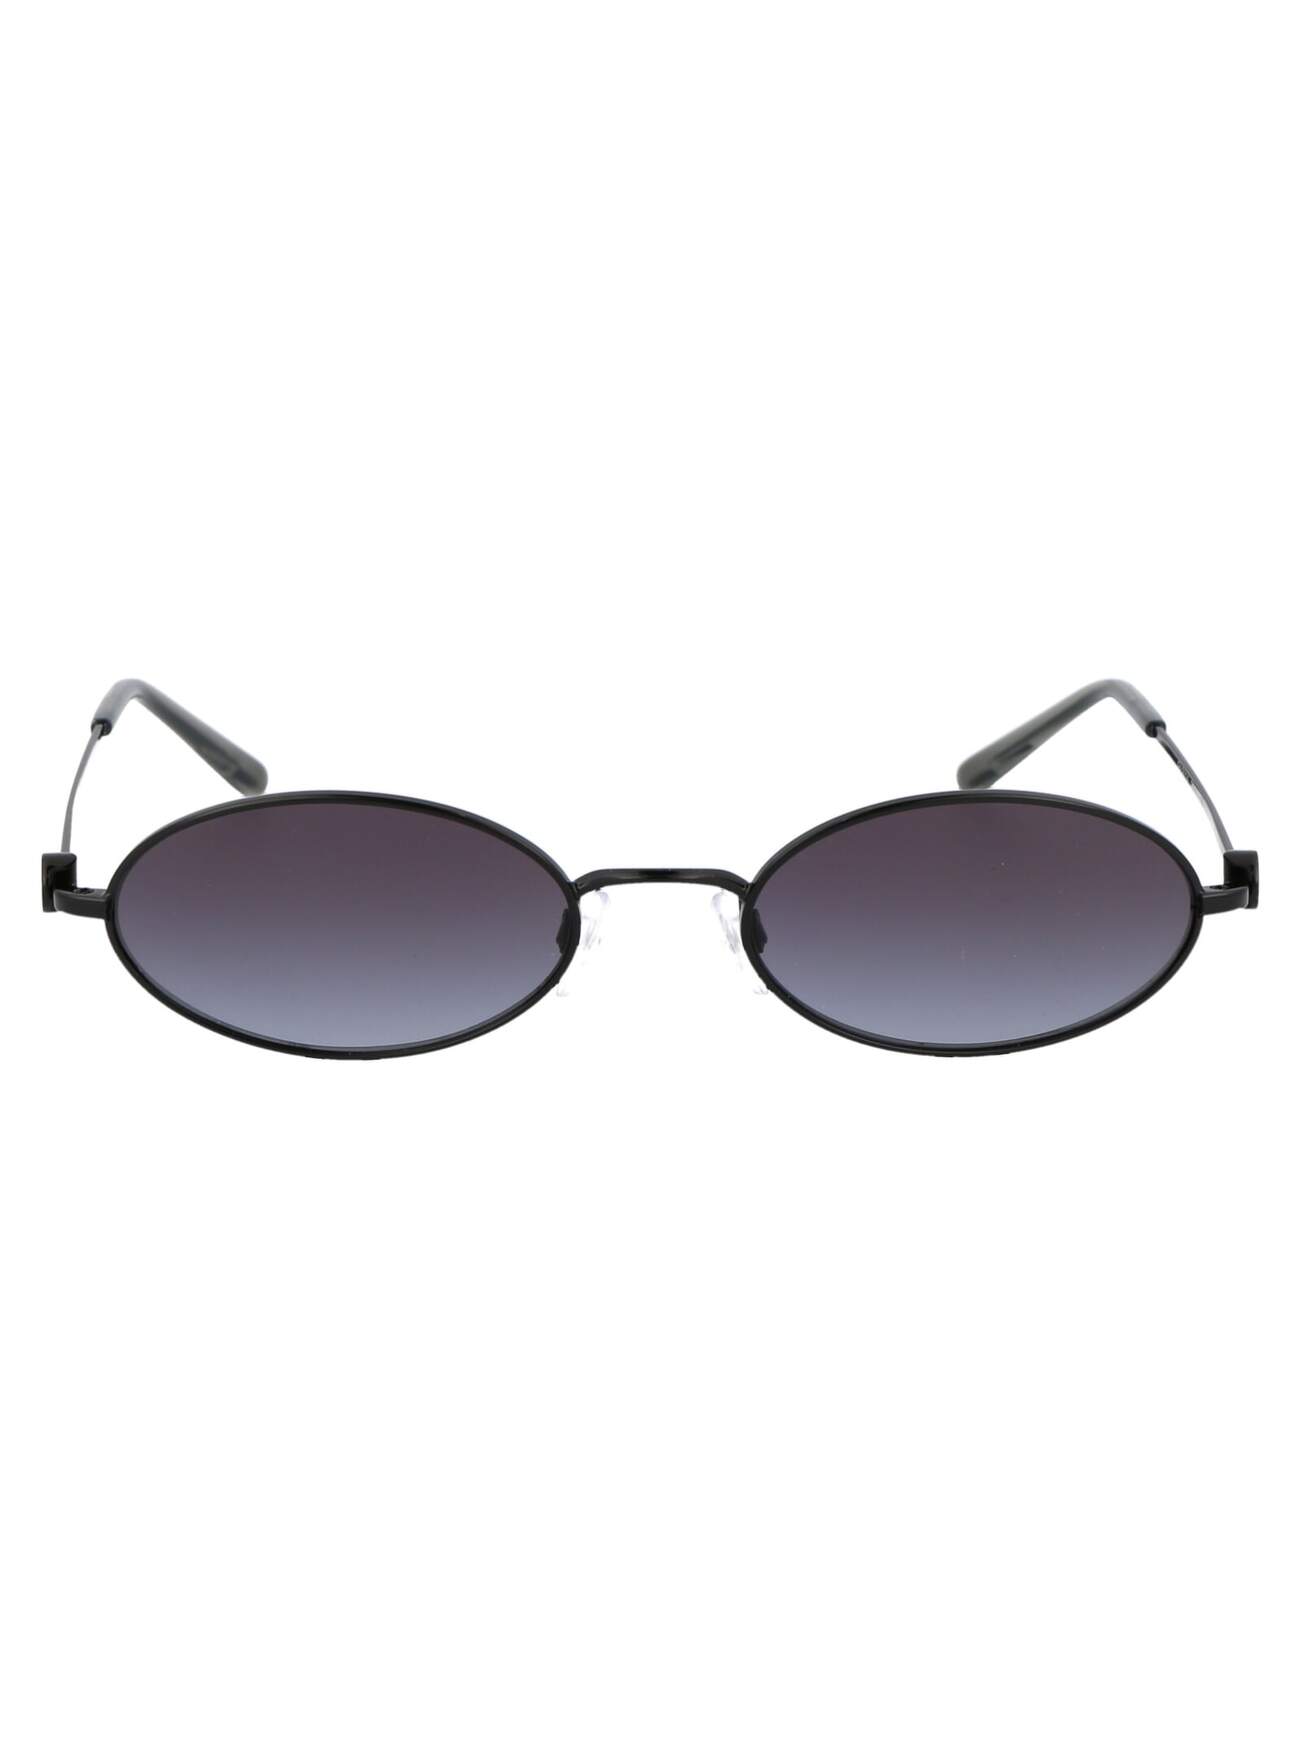 Emporio Armani 0ea2114 Sunglasses in black